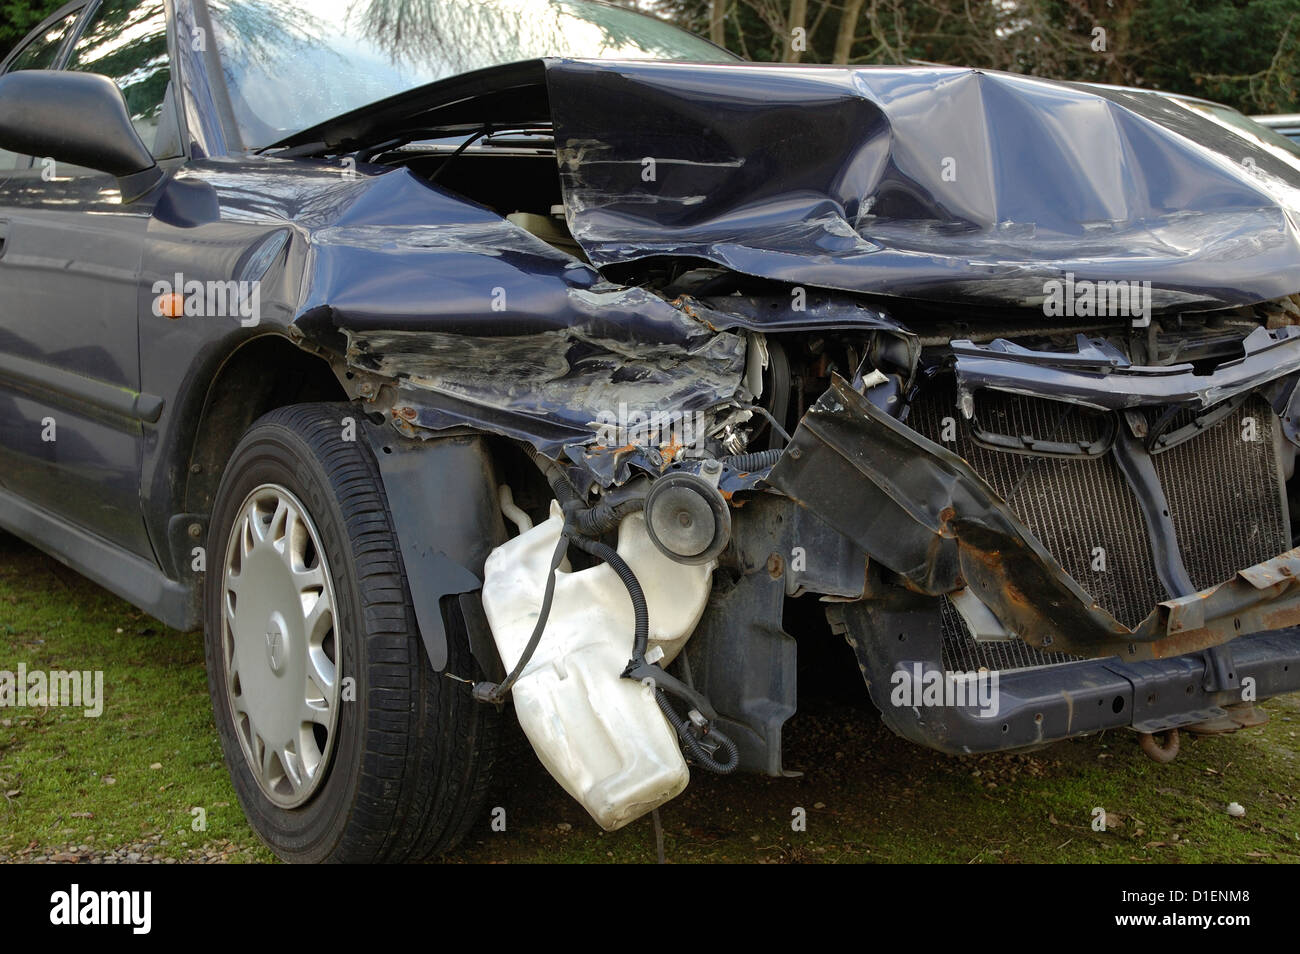 Accident damaged motorcar Stock Photo